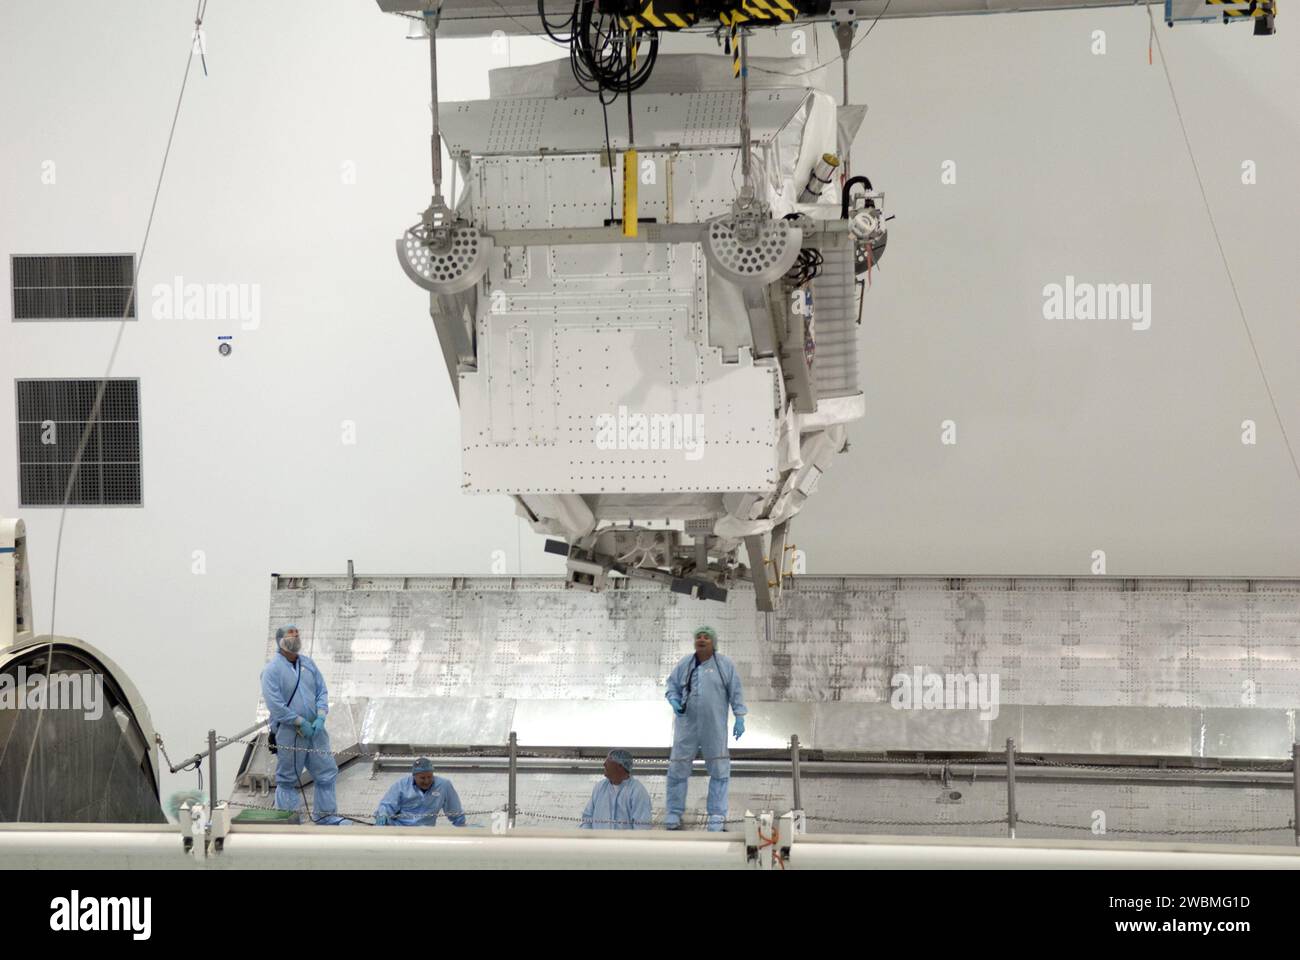 CAPE CANAVERAL, Fla. -- in der Raumstation-Verarbeitungsanlage im Kennedy Space Center der NASA in Florida, befindet sich das Alpha Magnetic Spectrometer-2 AMS über einem Nutzlastbehälter, nachdem Techniker sein Gewicht und seinen Schwerpunkt gemessen haben. Der Kanister wird die raumgebundene Nutzlast auf der Reise zum Launch Pad 39A schützen, wo sie später im Nutzlastbereich des Space Shuttle Endeavour installiert wird. AMS ist ein Teilchenphysik-Detektor, der als externes Experiment auf der Internationalen Raumstation eingesetzt werden soll. Es wird die einzigartige Umgebung des Weltraums nutzen, um das Universum und seinen Ursprung zu erforschen Stockfoto